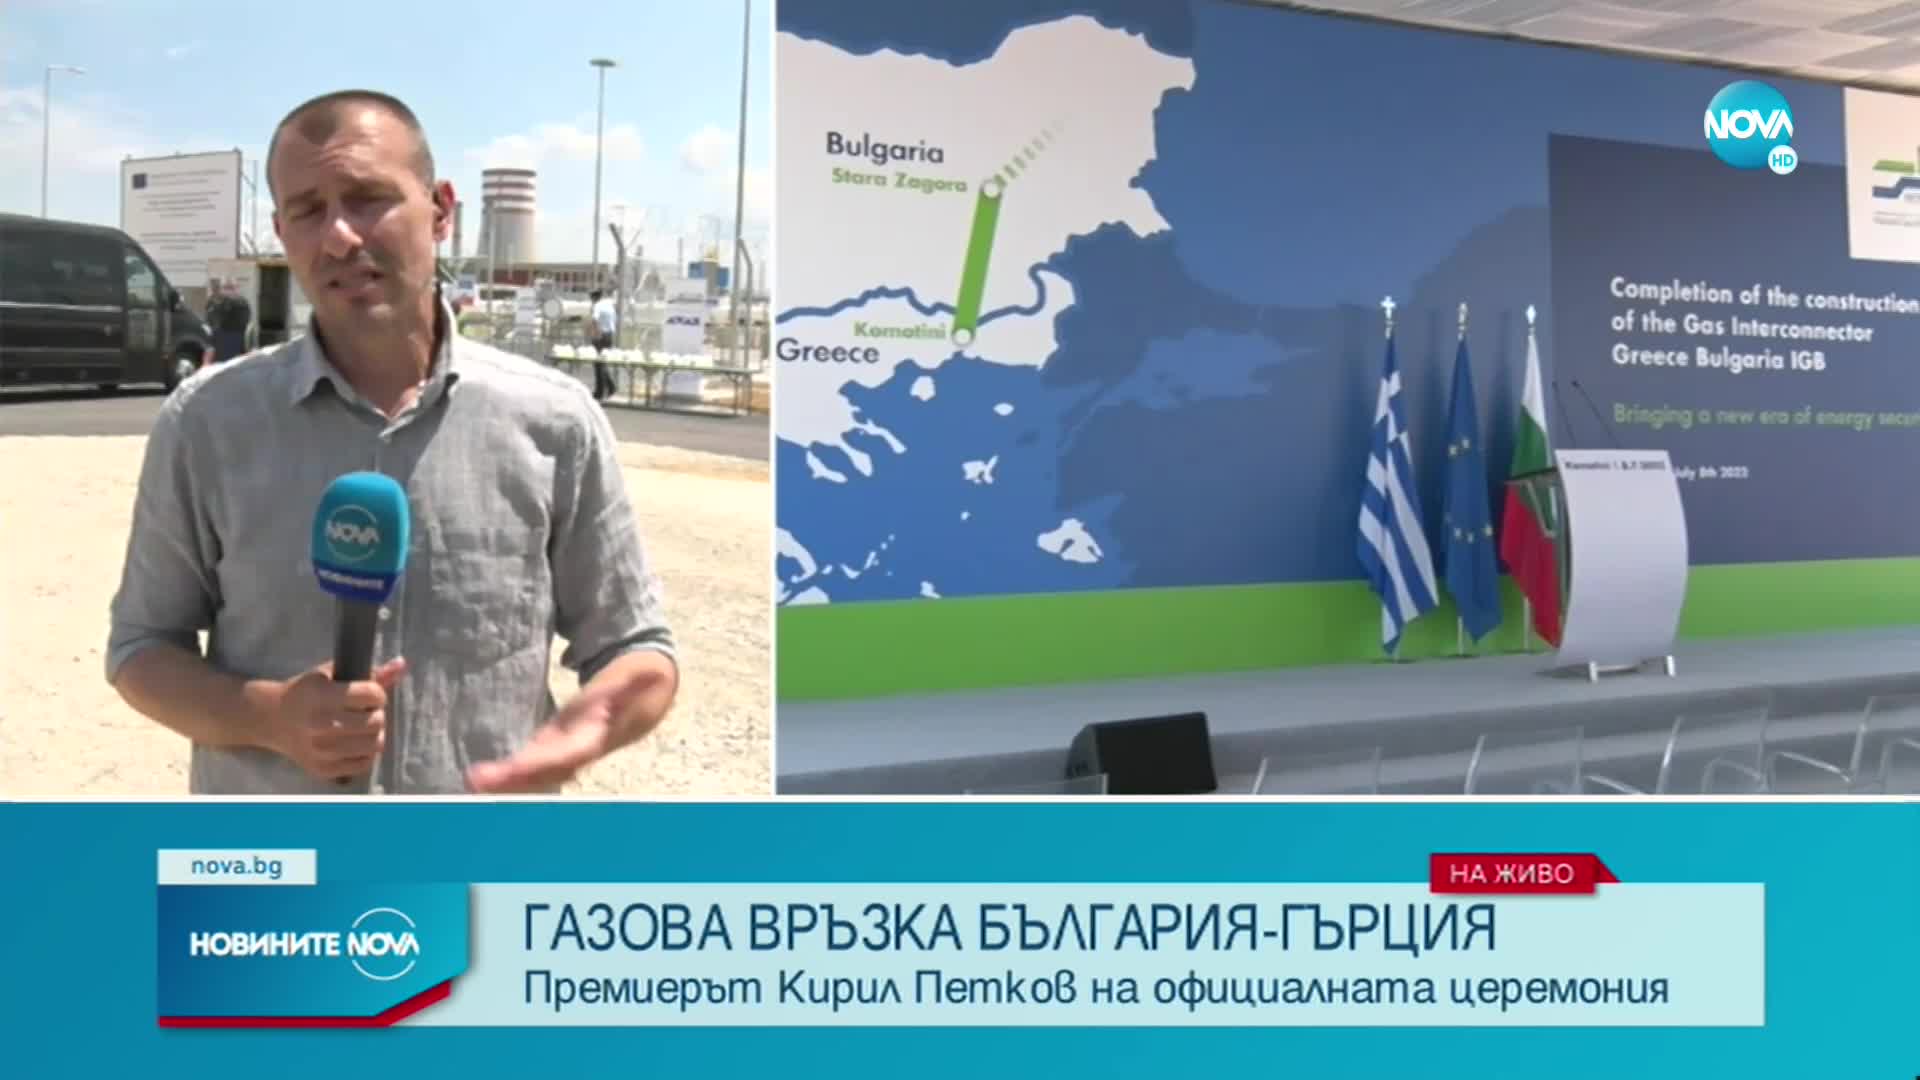 Старт на газовата връзка България-Гърция